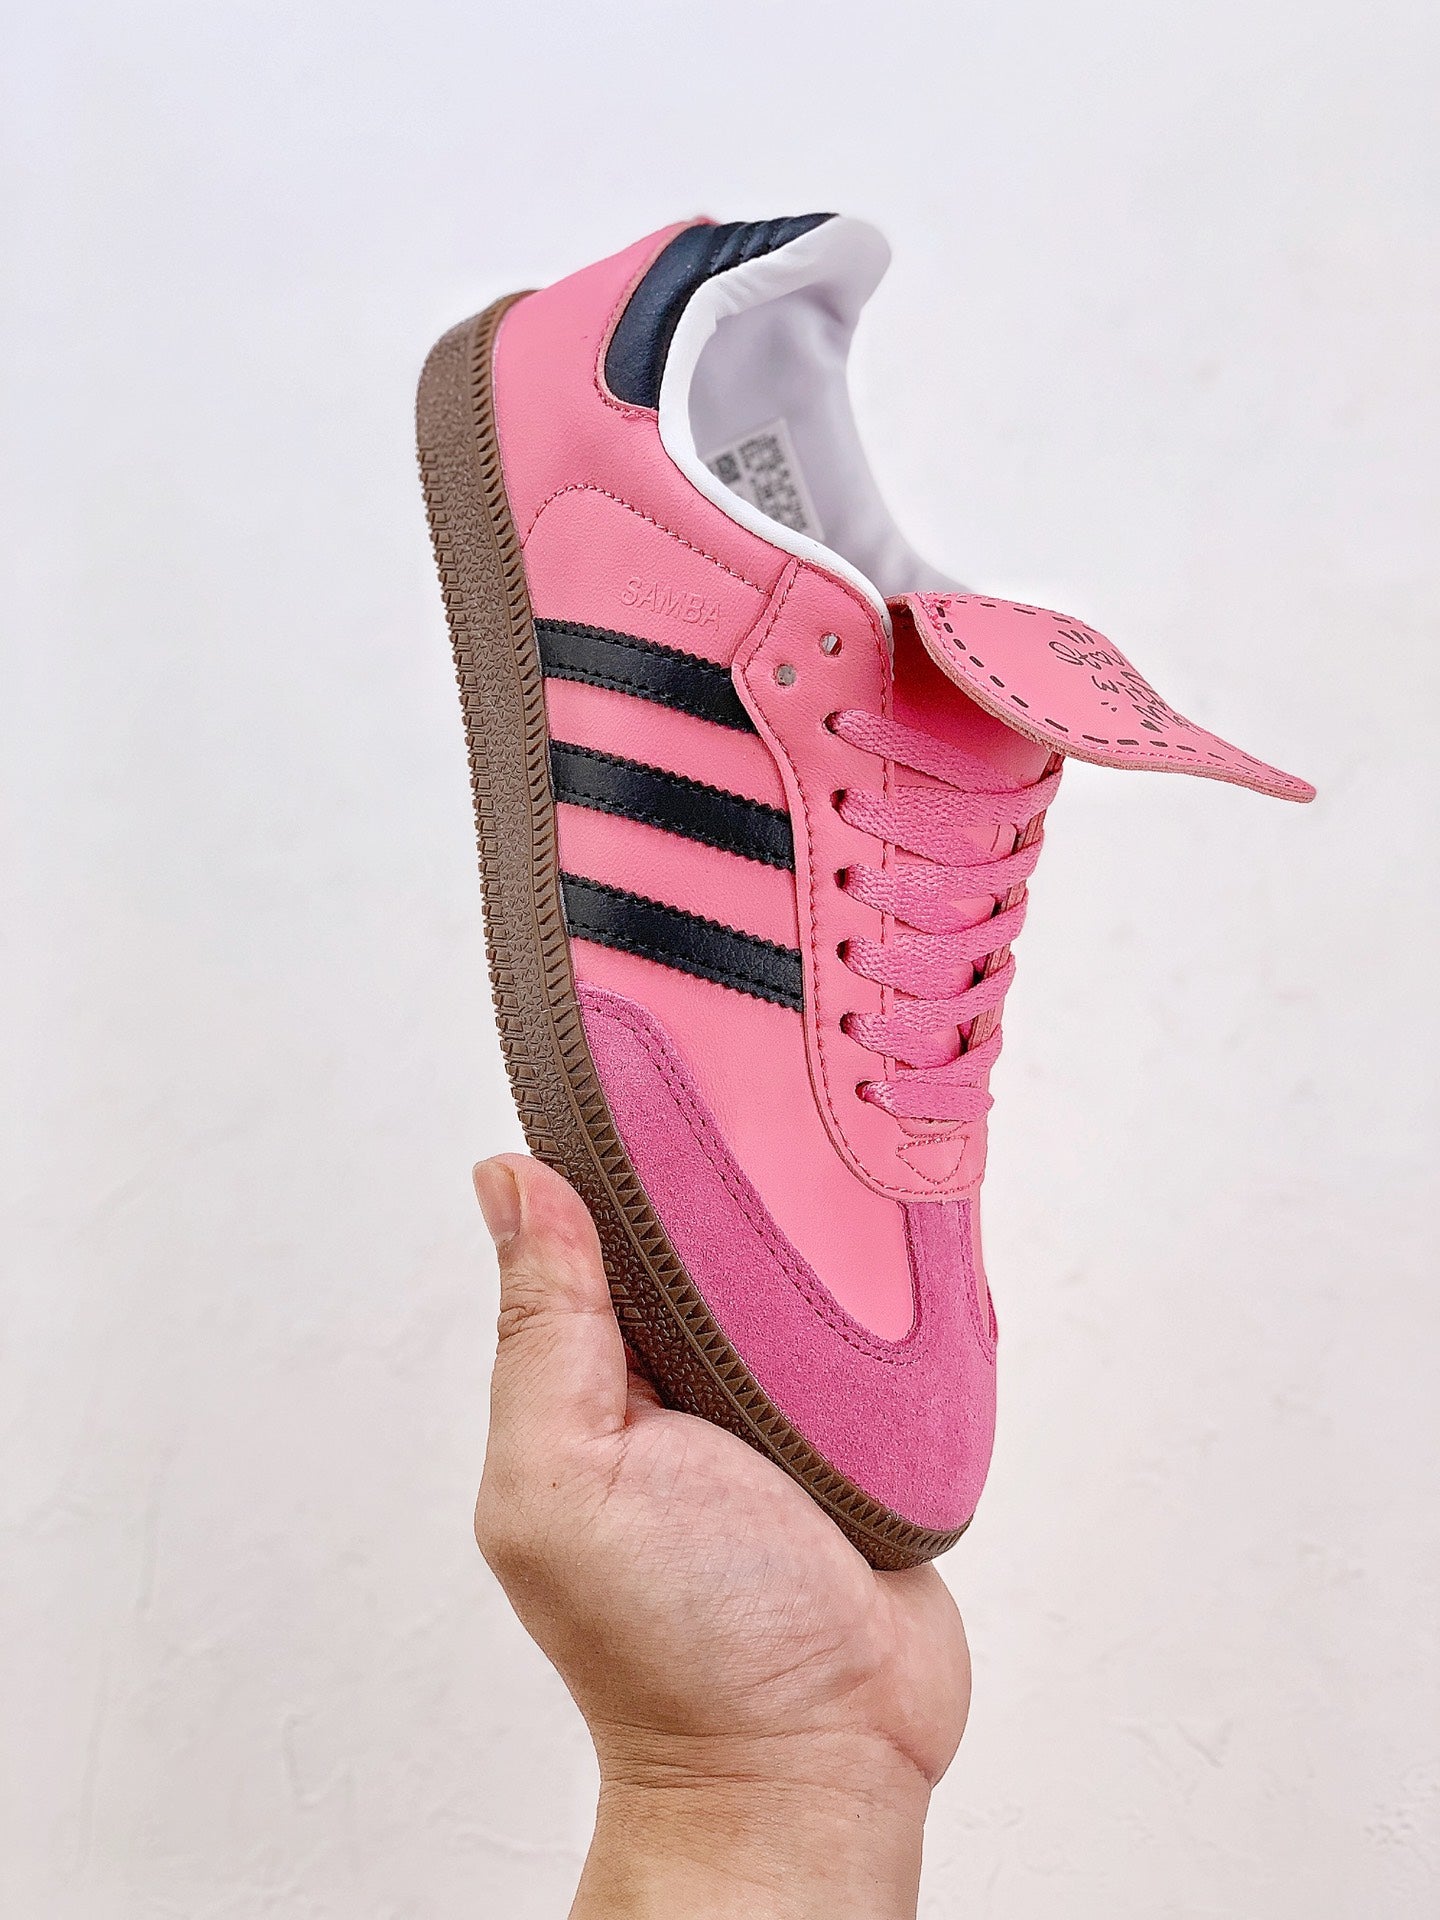 Adidas samba hot pink shoes